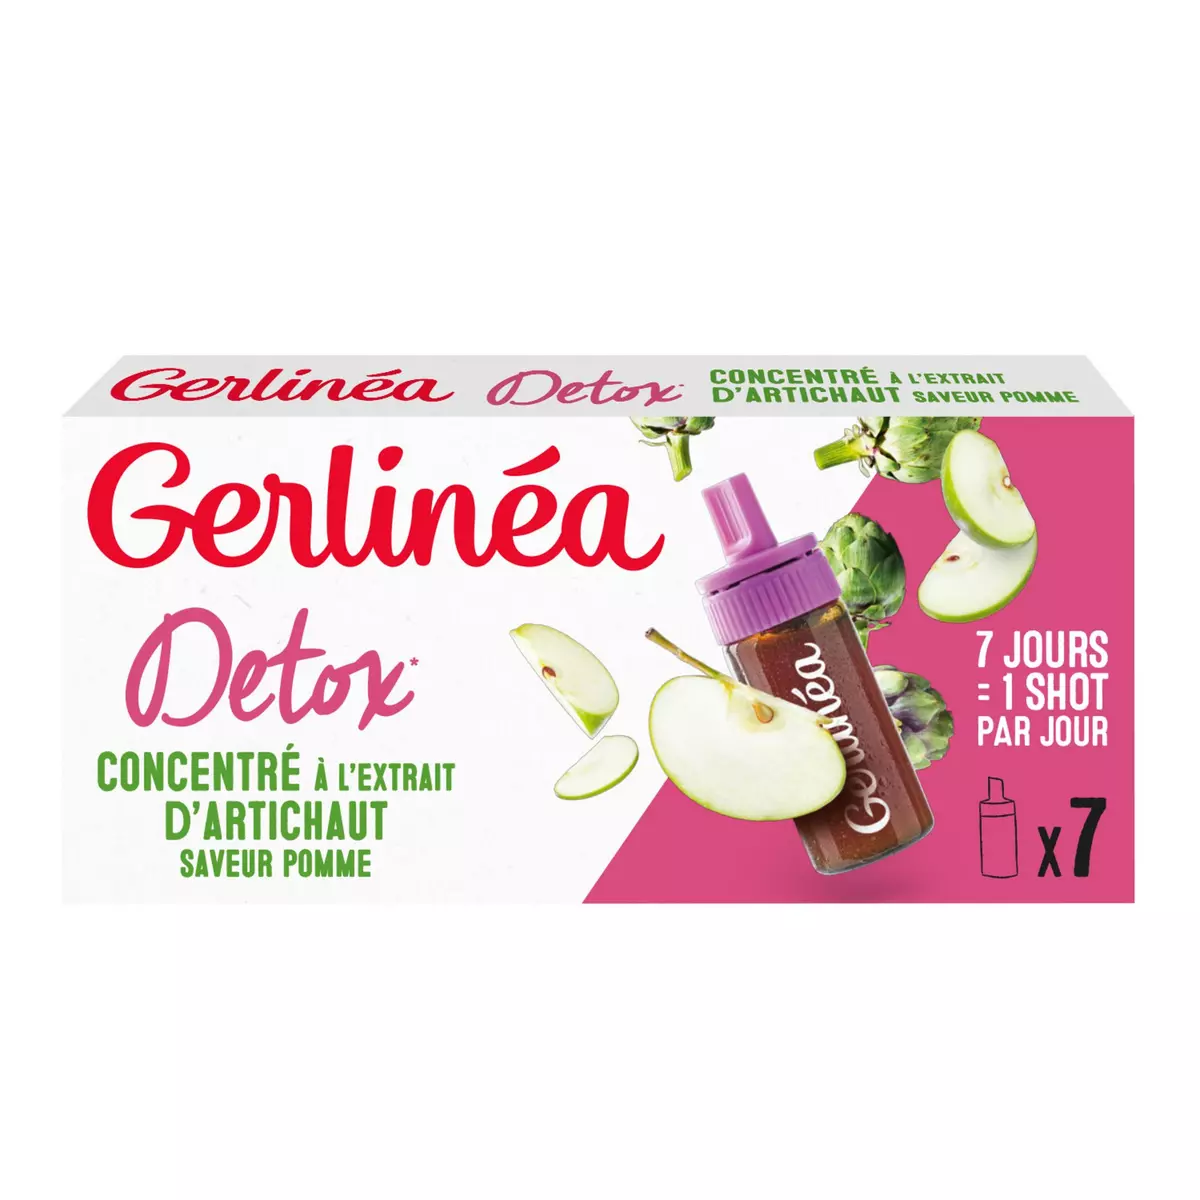 GERLINEA Détox et contrôle de poids concentré à l'extrait d'artichaut saveur pomme 7 shots 70ml